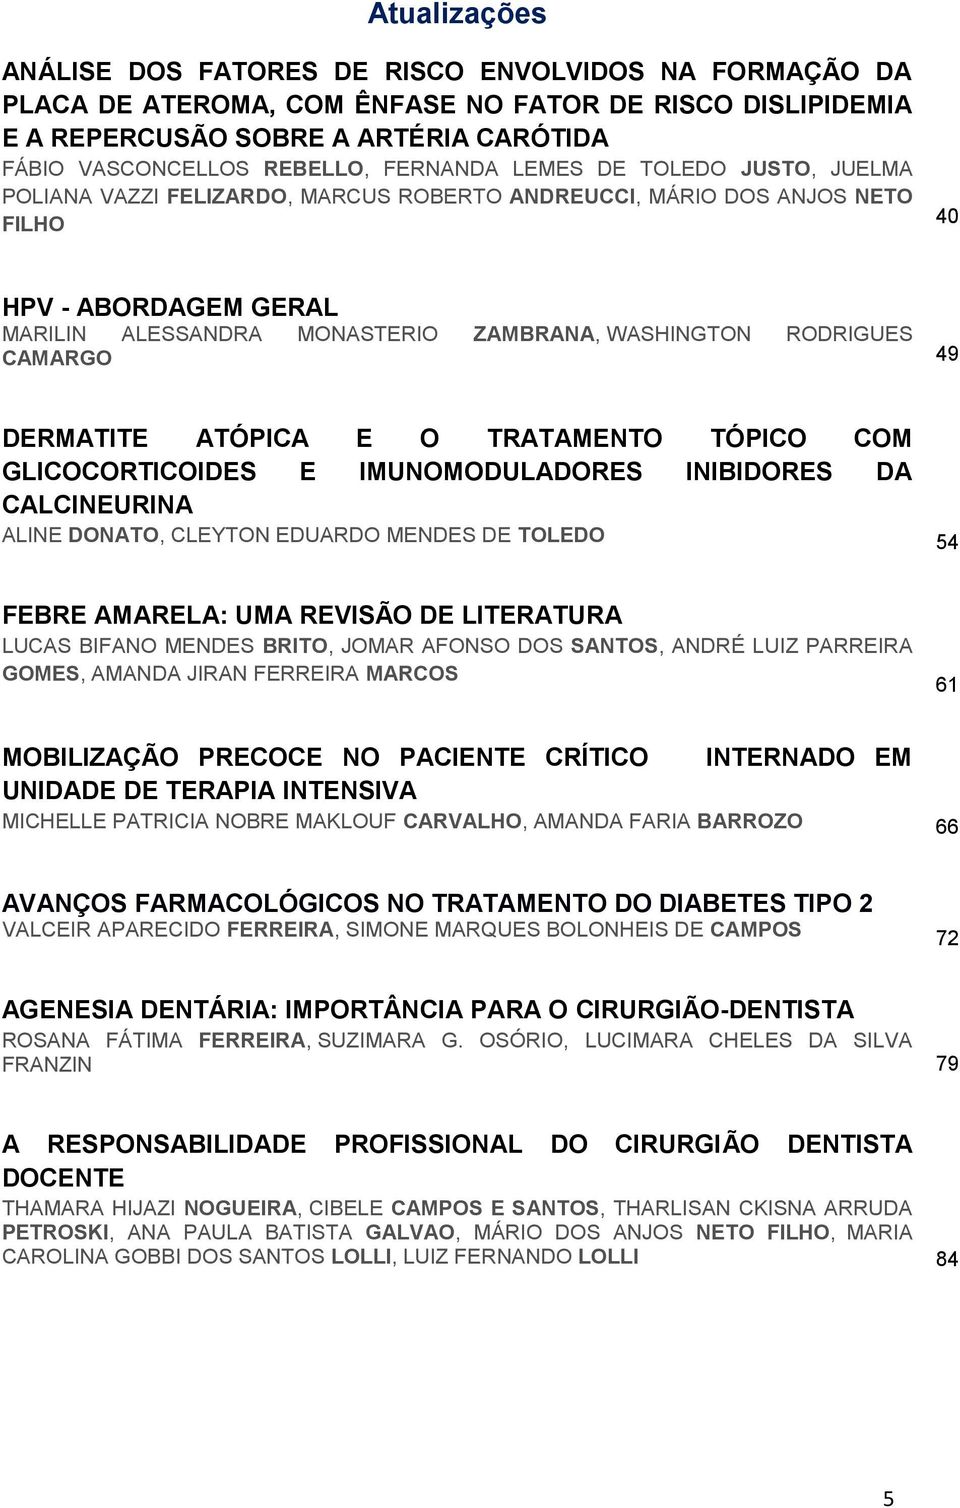 RODRIGUES CAMARGO 49 DERMATITE ATÓPICA E O TRATAMENTO TÓPICO COM GLICOCORTICOIDES E IMUNOMODULADORES INIBIDORES DA CALCINEURINA ALINE DONATO, CLEYTON EDUARDO MENDES DE TOLEDO 54 FEBRE AMARELA: UMA